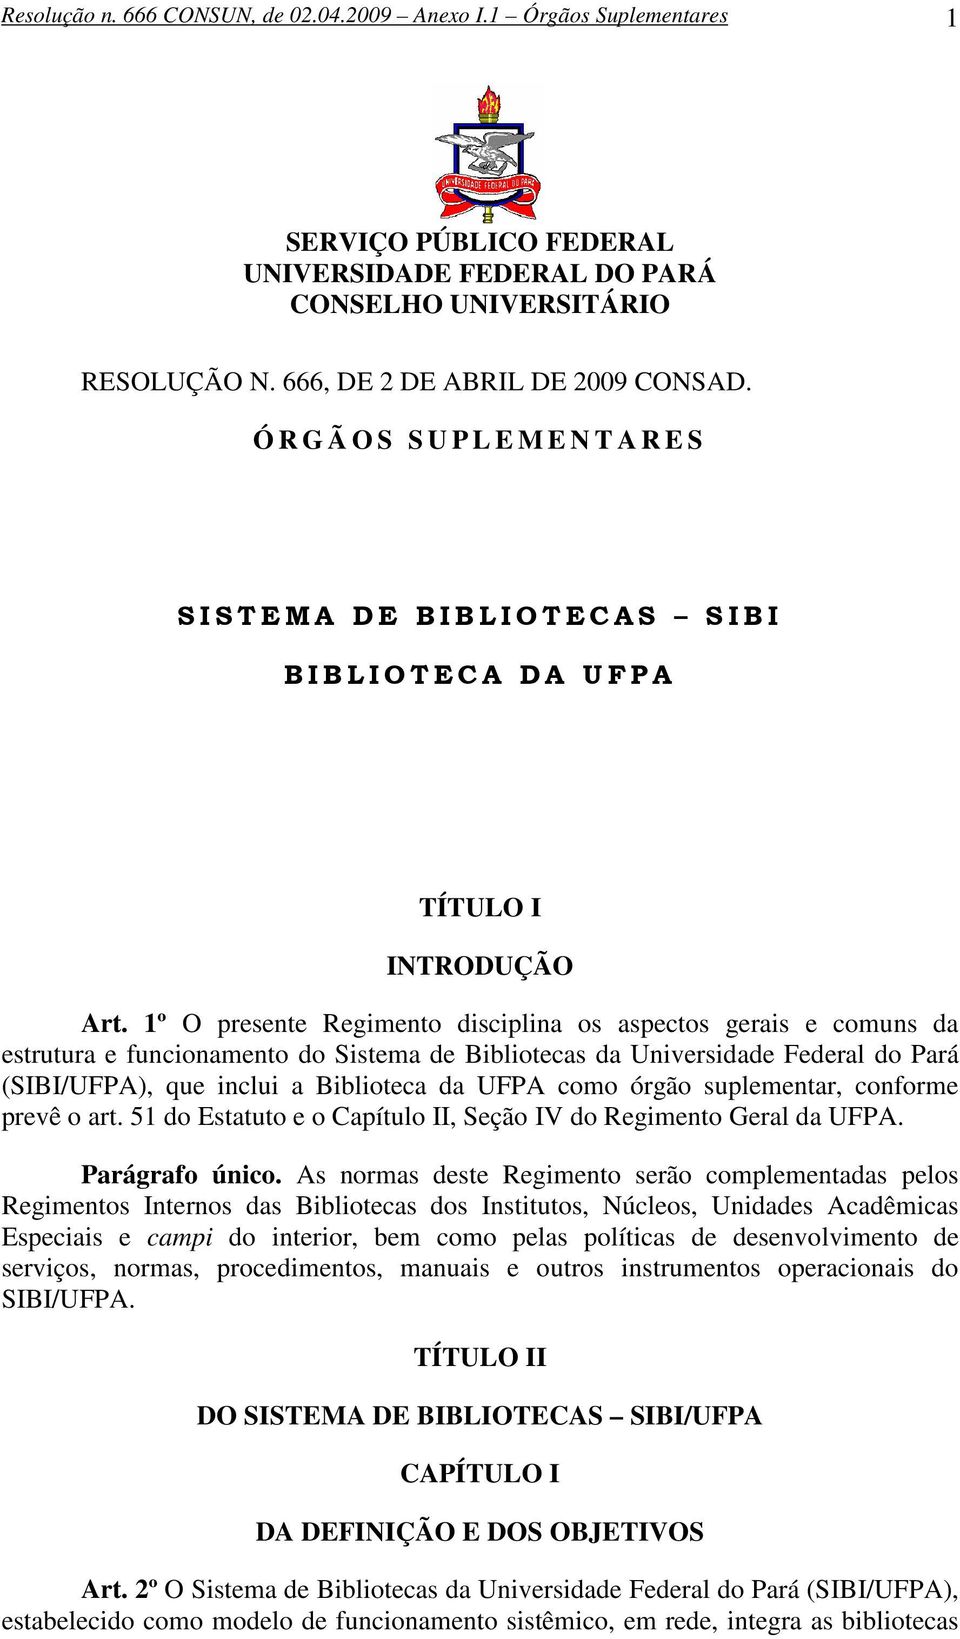 1º O presente Regimento disciplina os aspectos gerais e comuns da estrutura e funcionamento do Sistema de Bibliotecas da Universidade Federal do Pará (SIBI/UFPA), que inclui a Biblioteca da UFPA como